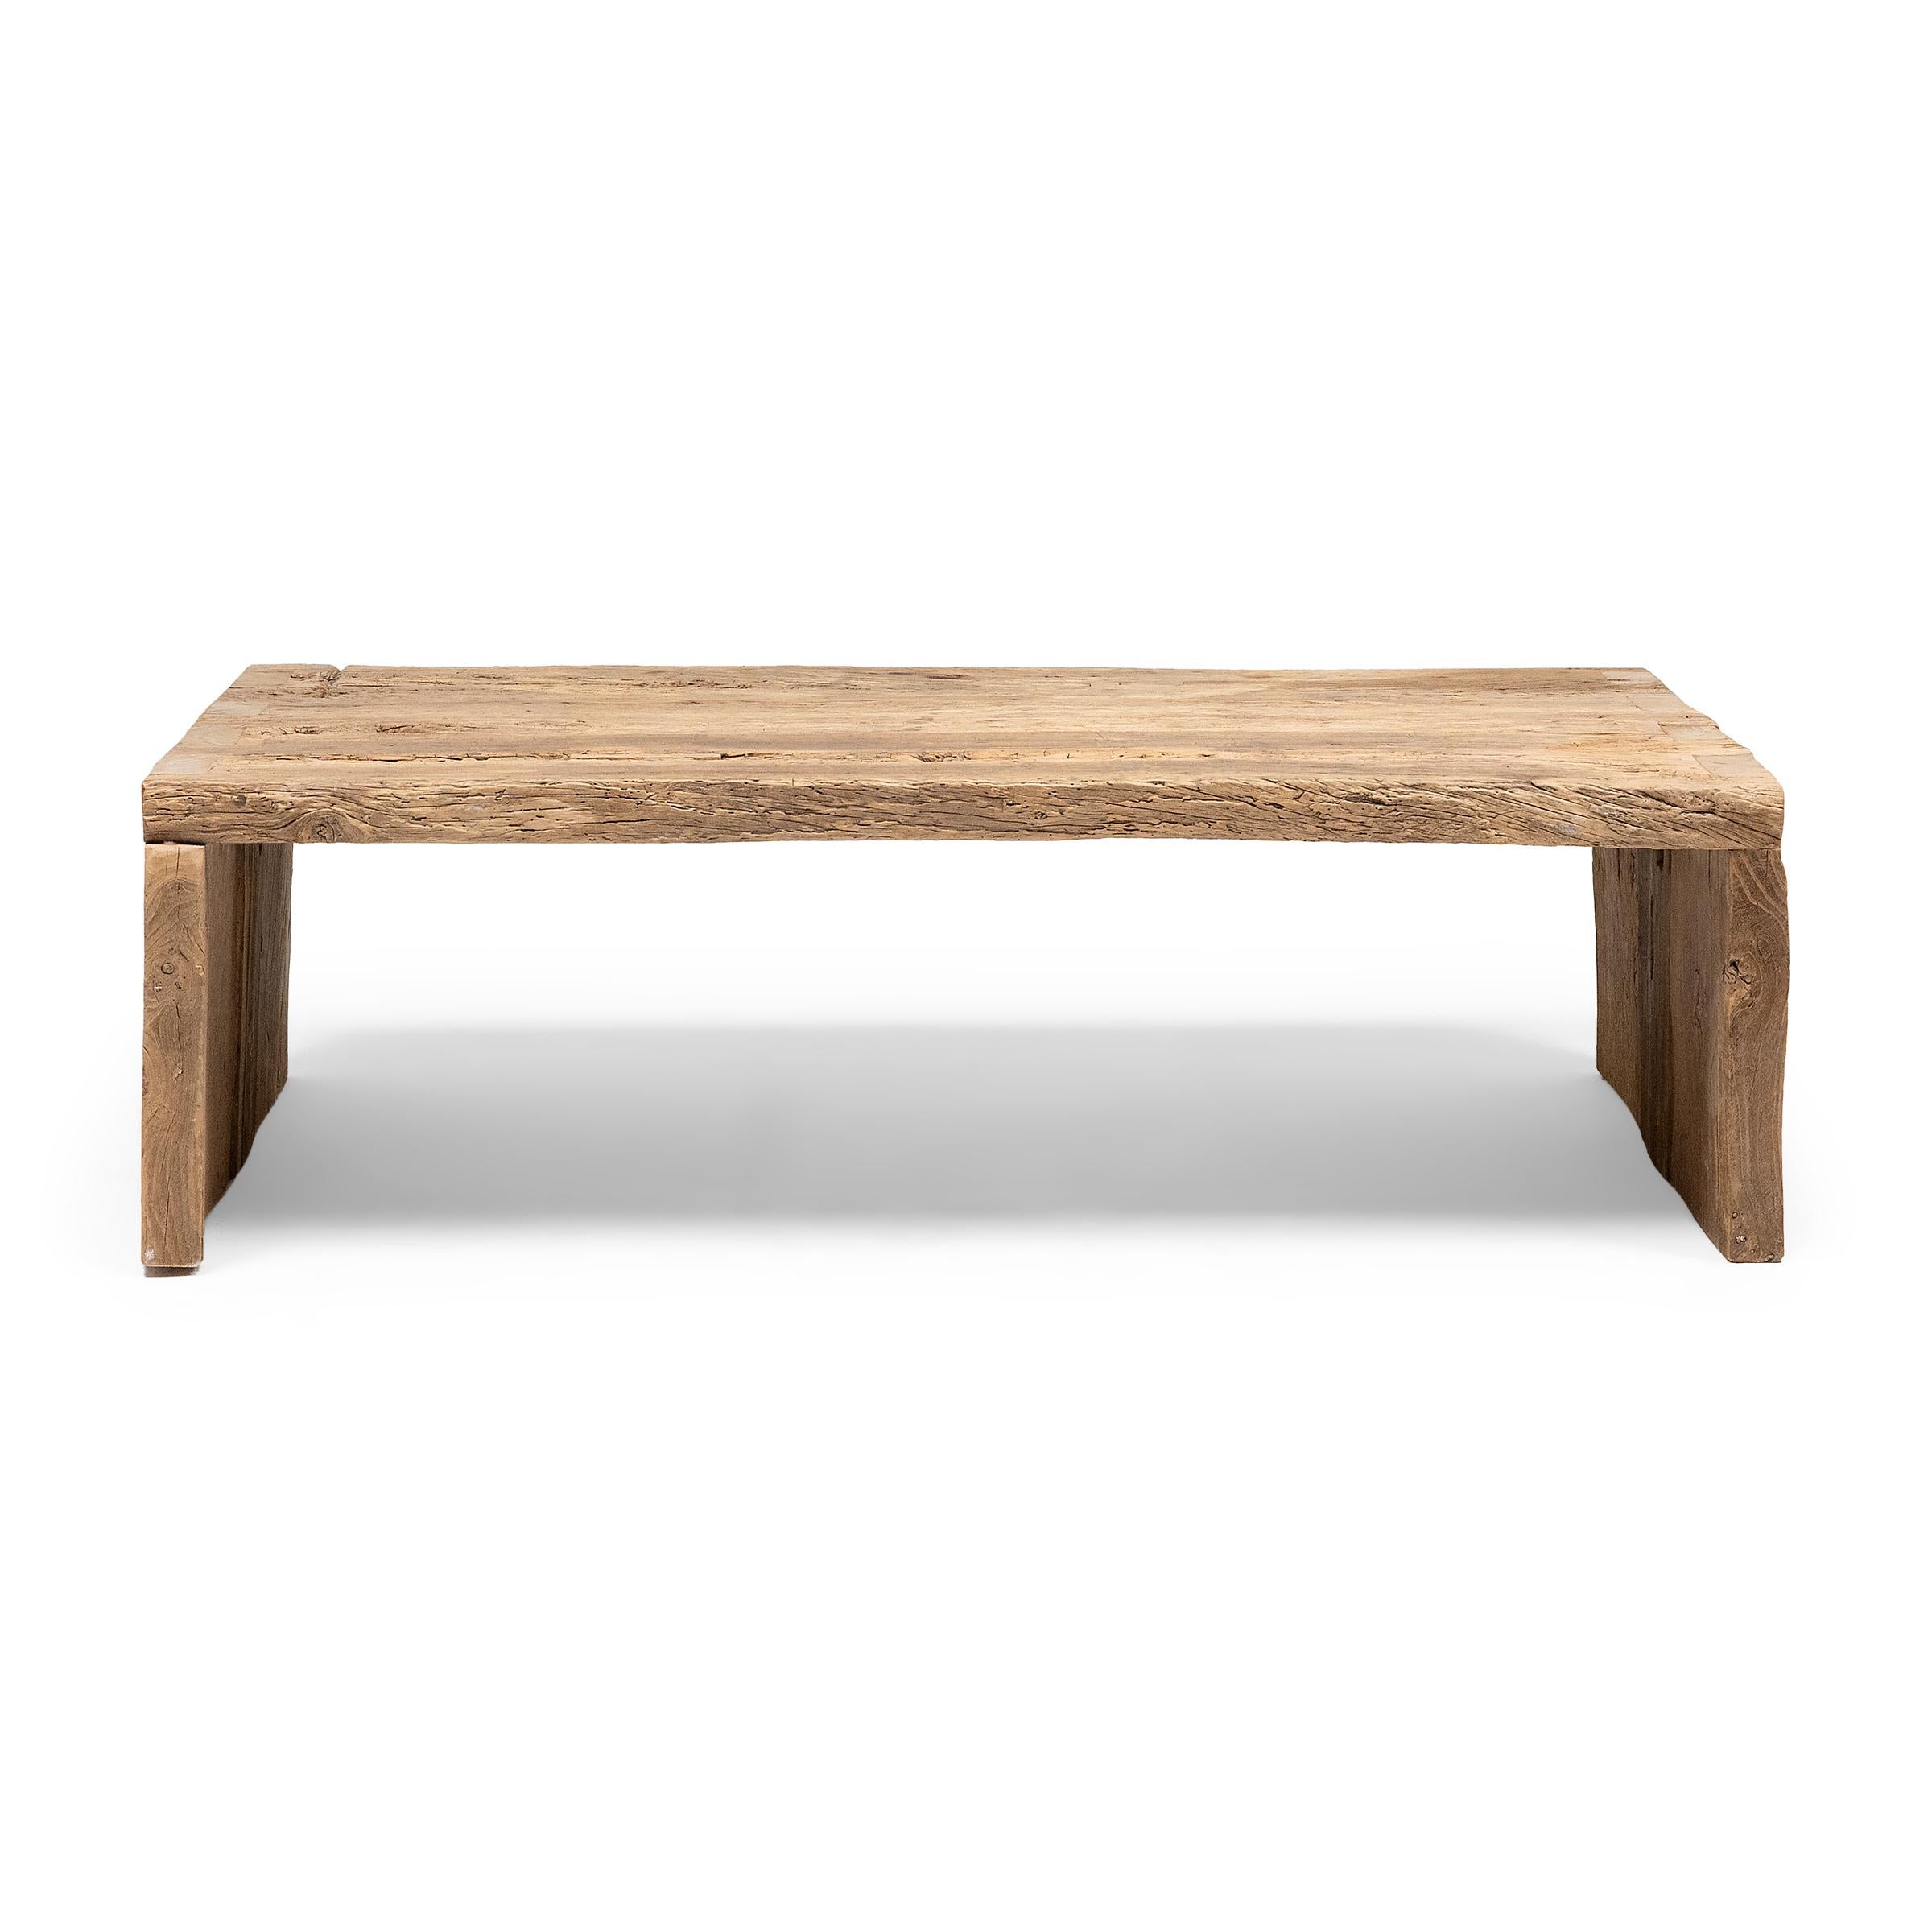 Dieser handwerklich gefertigte niedrige Tisch ist eine Zelebrierung des Wabi-Sabi-Stils. Der Tisch ist aus dickem Ulmenholz gefertigt, das aus der Architektur der Qing-Dynastie stammt. Er hat ein minimalistisches Wasserfalldesign und ist